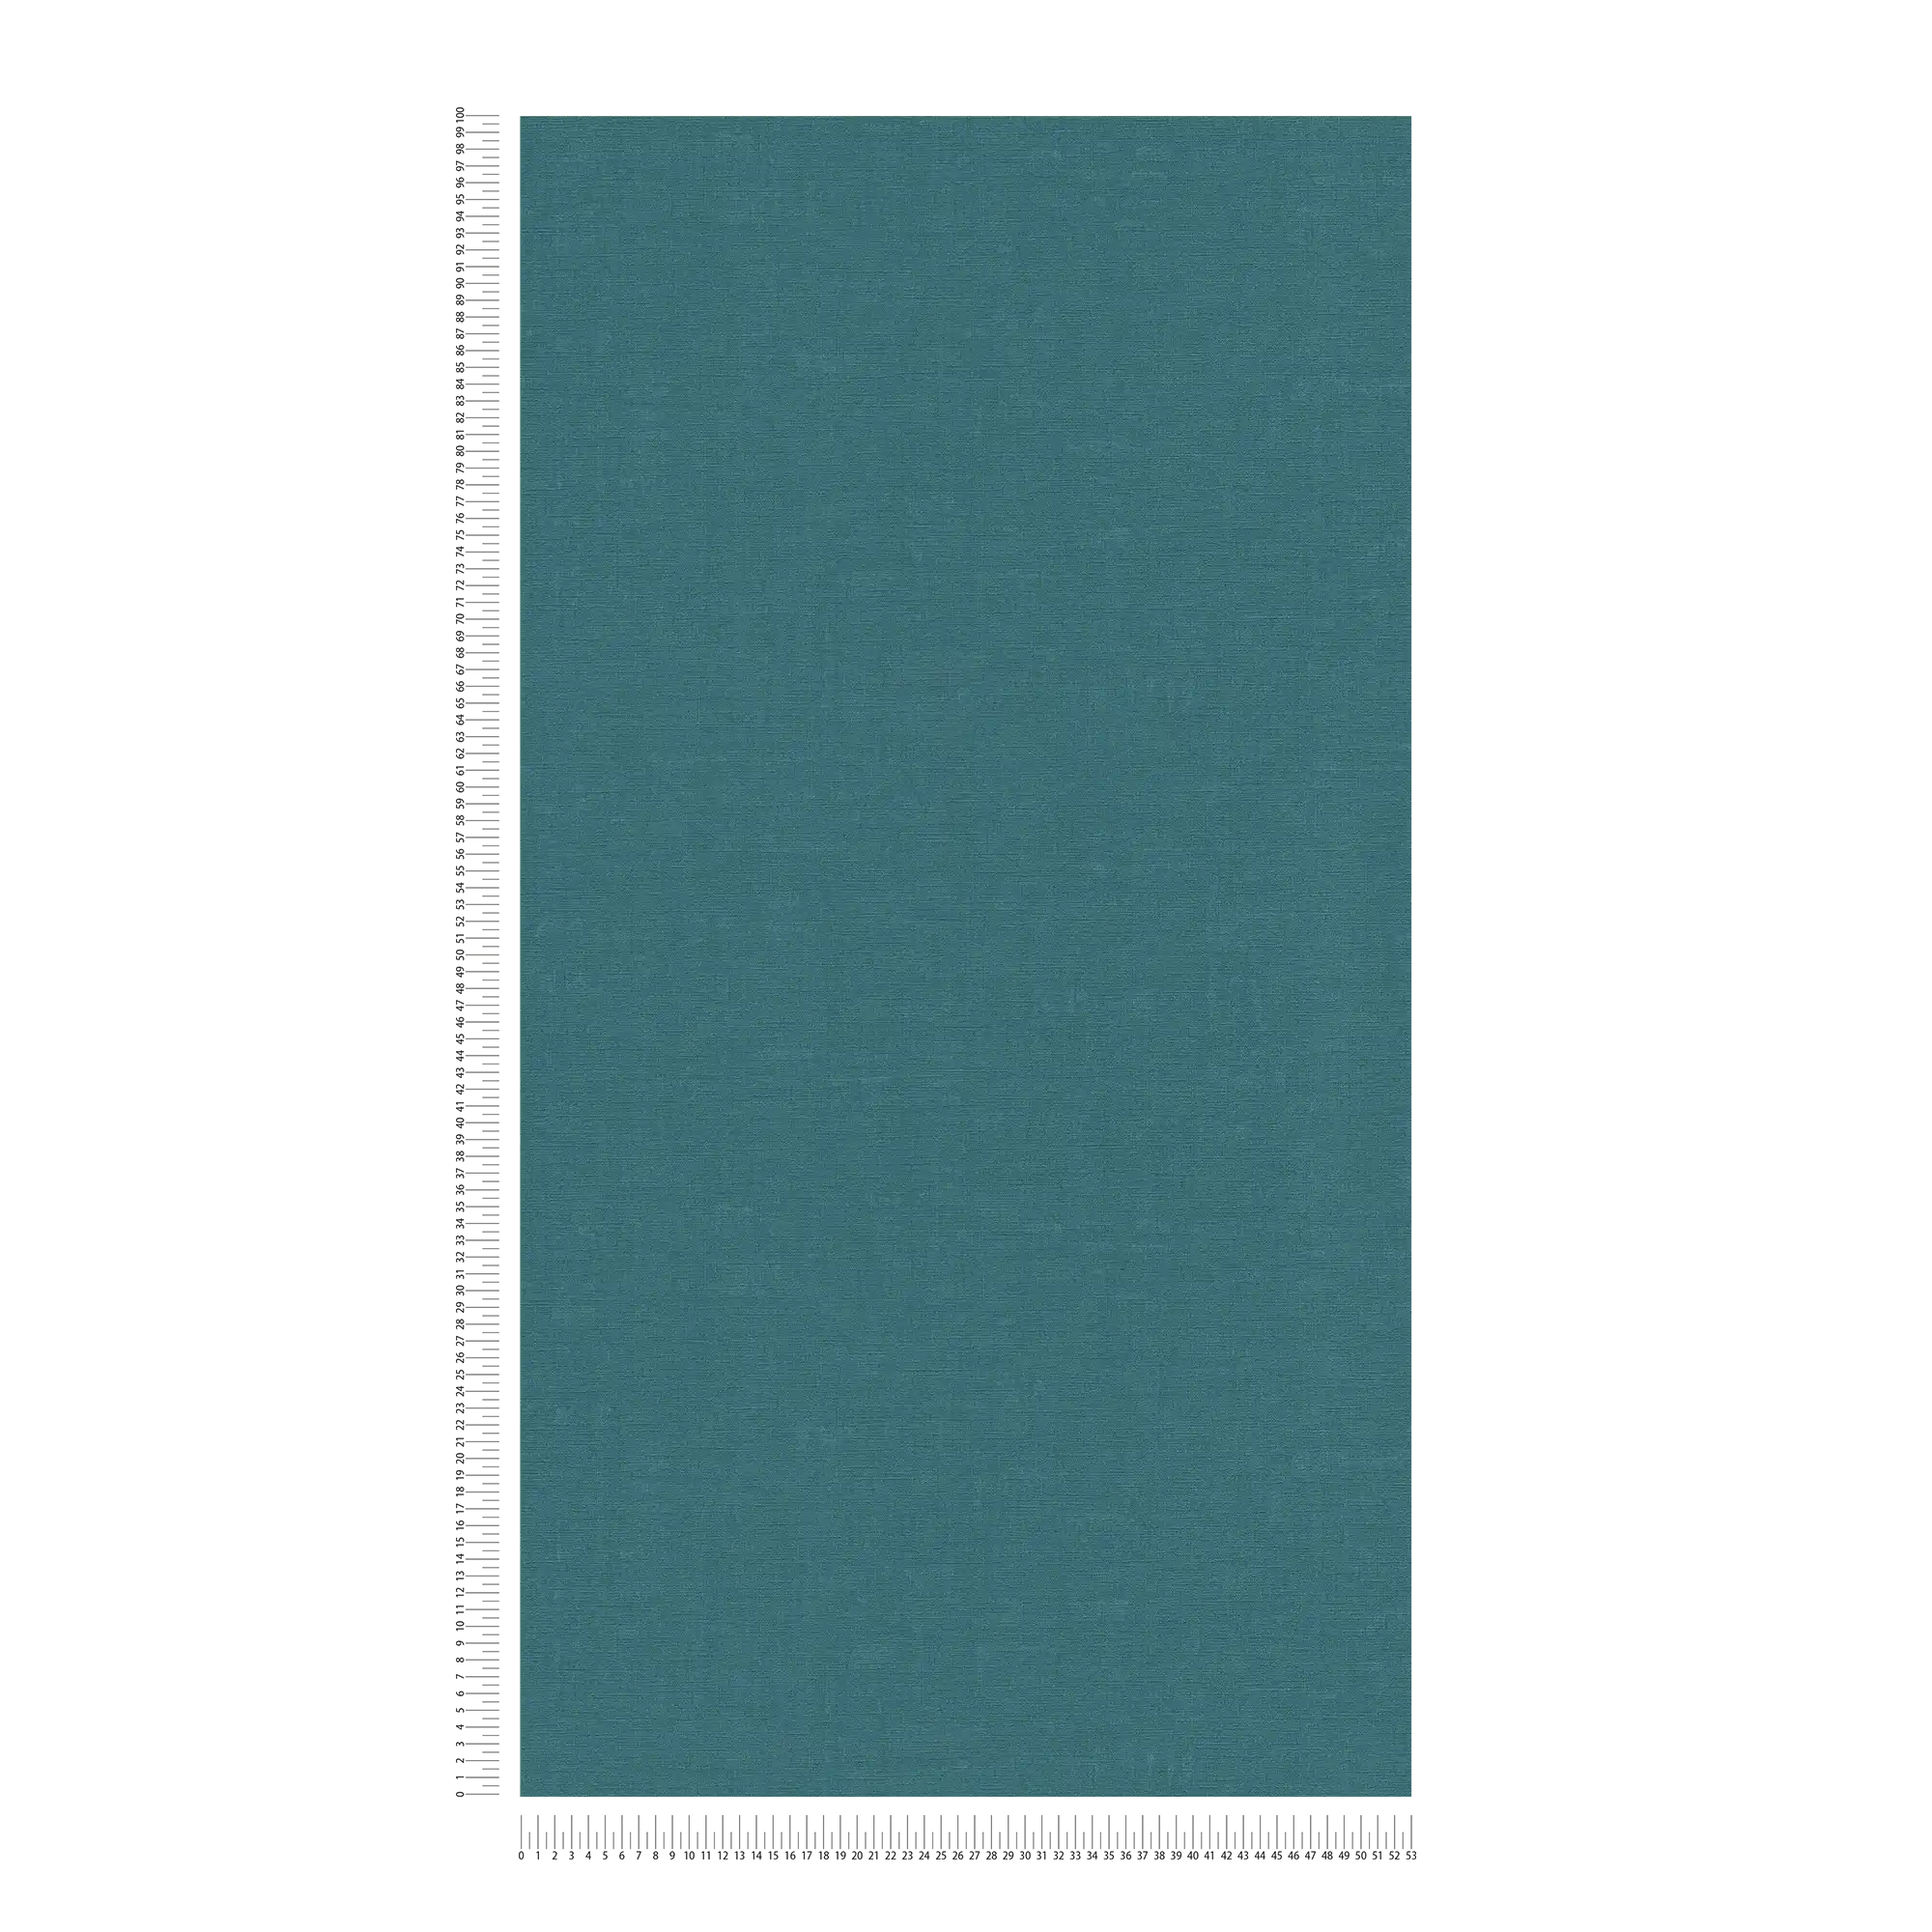             Vliestapete einfarbig mit meliertem Effekt – Blau, Grün
        